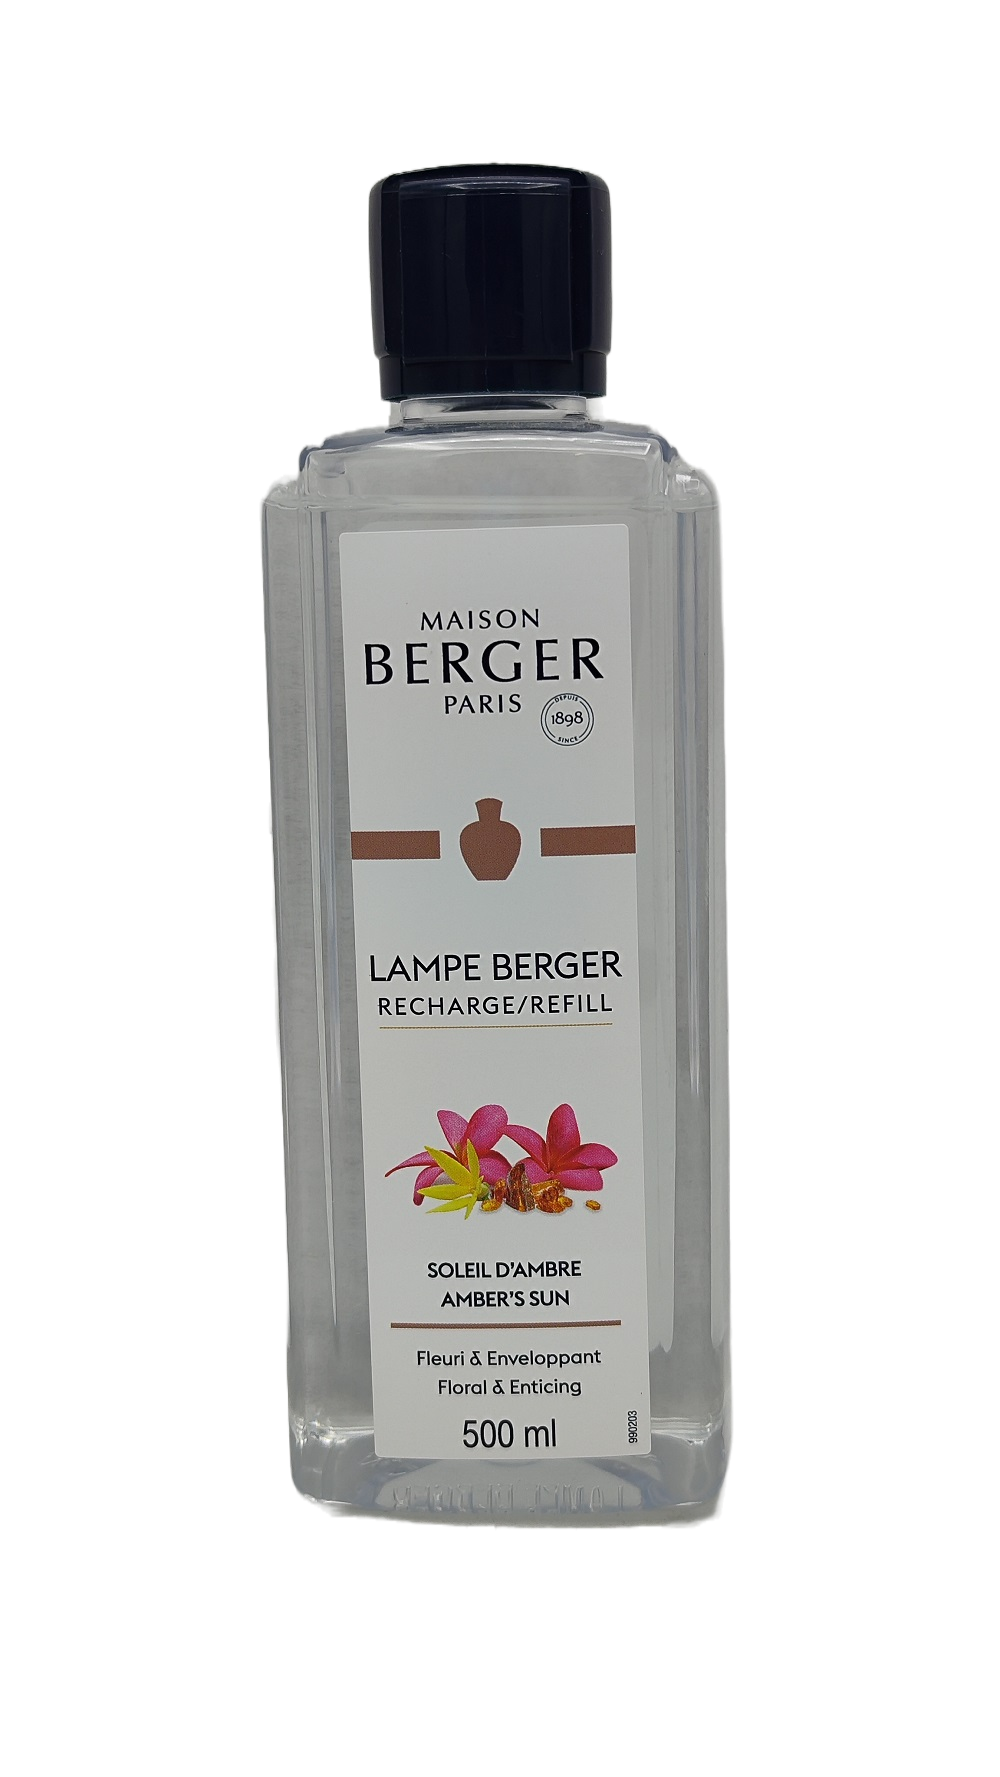 Amber's Sun - Lampe Berger Refill 500 ml - Maison Berger